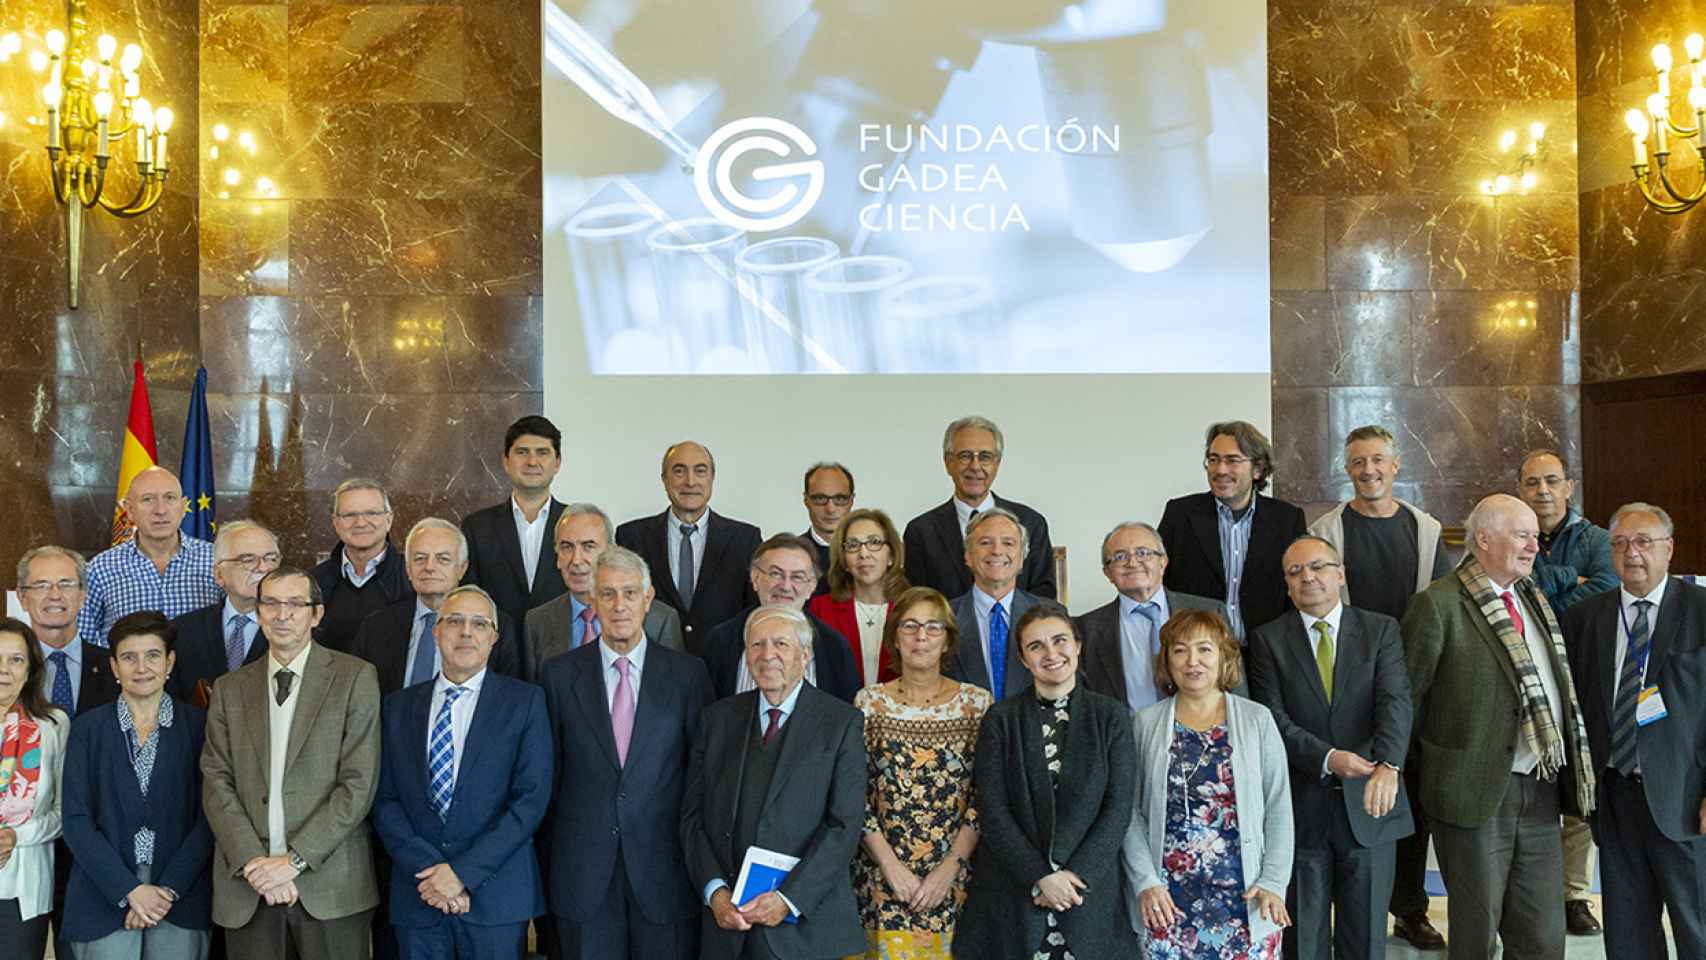 II Forum de la Fundación Gadea Ciencia.